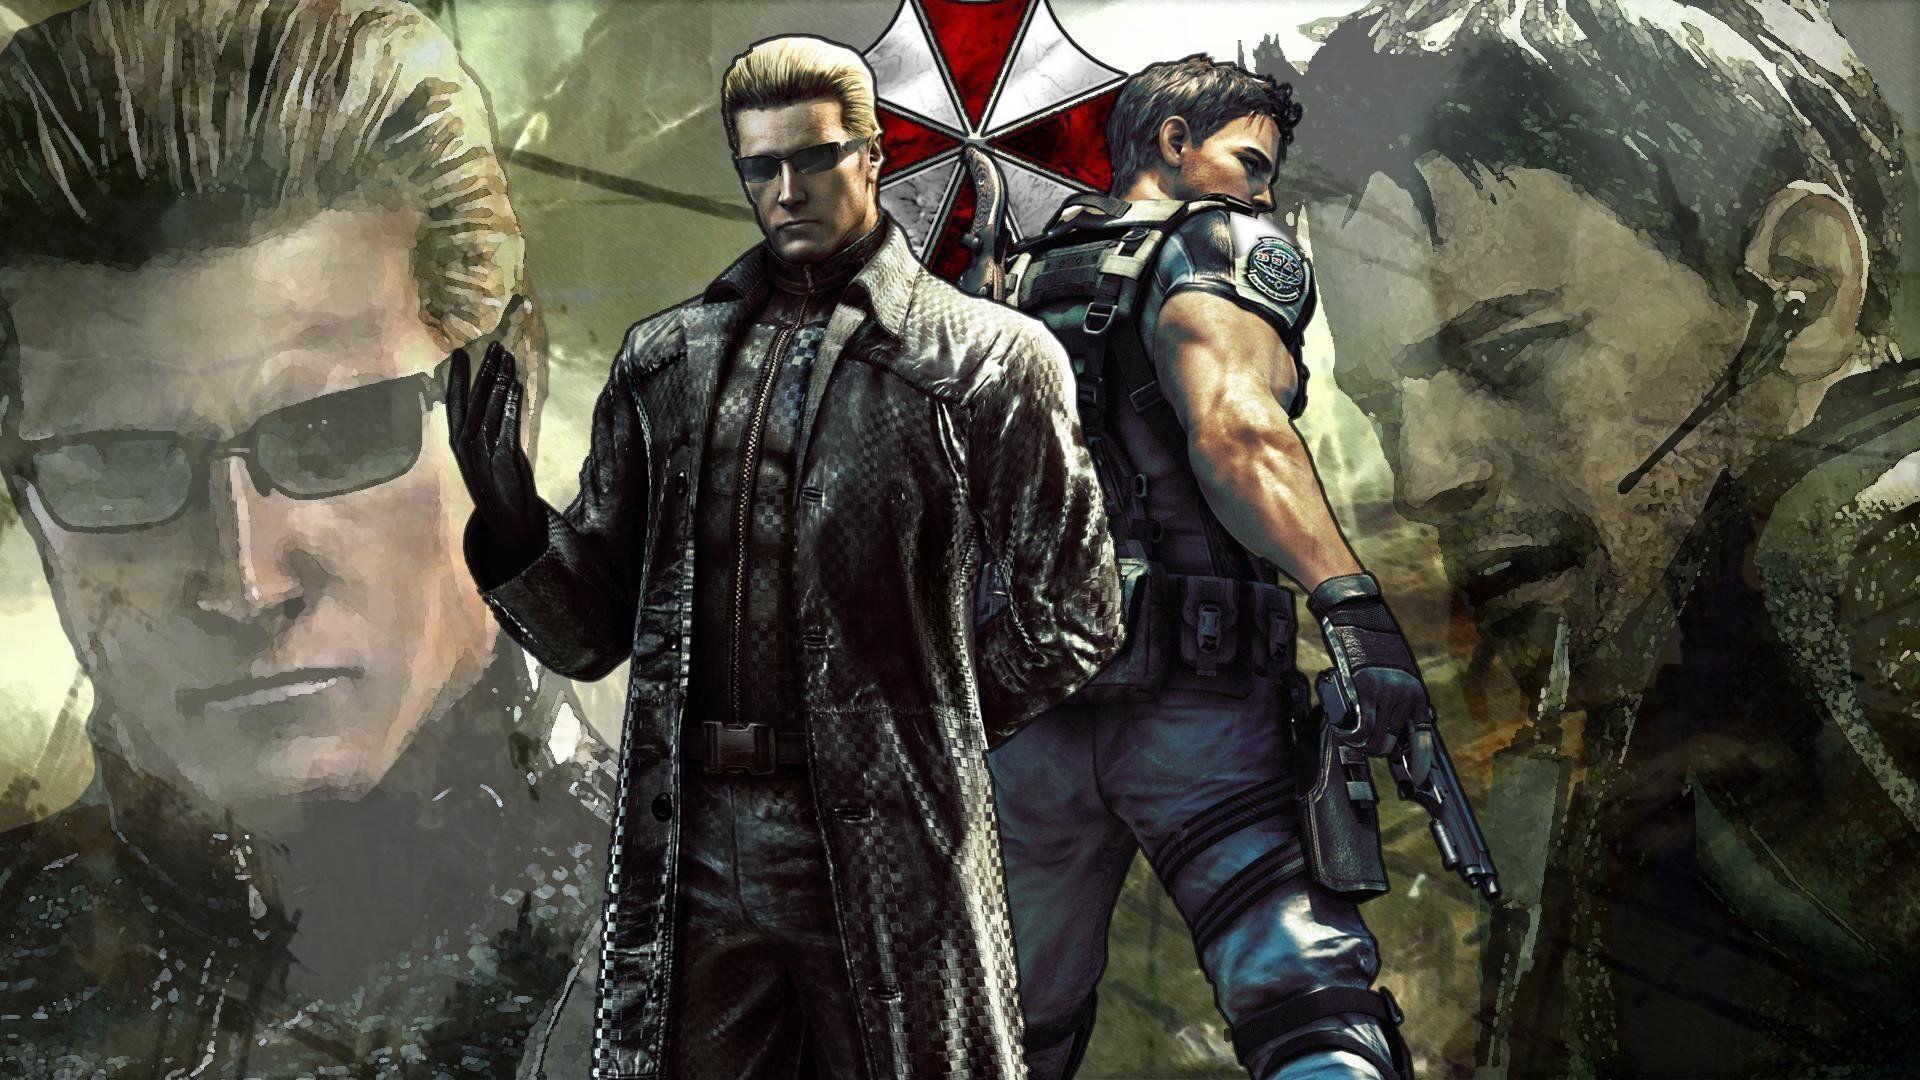 Chris Redfield Resident Evil 6